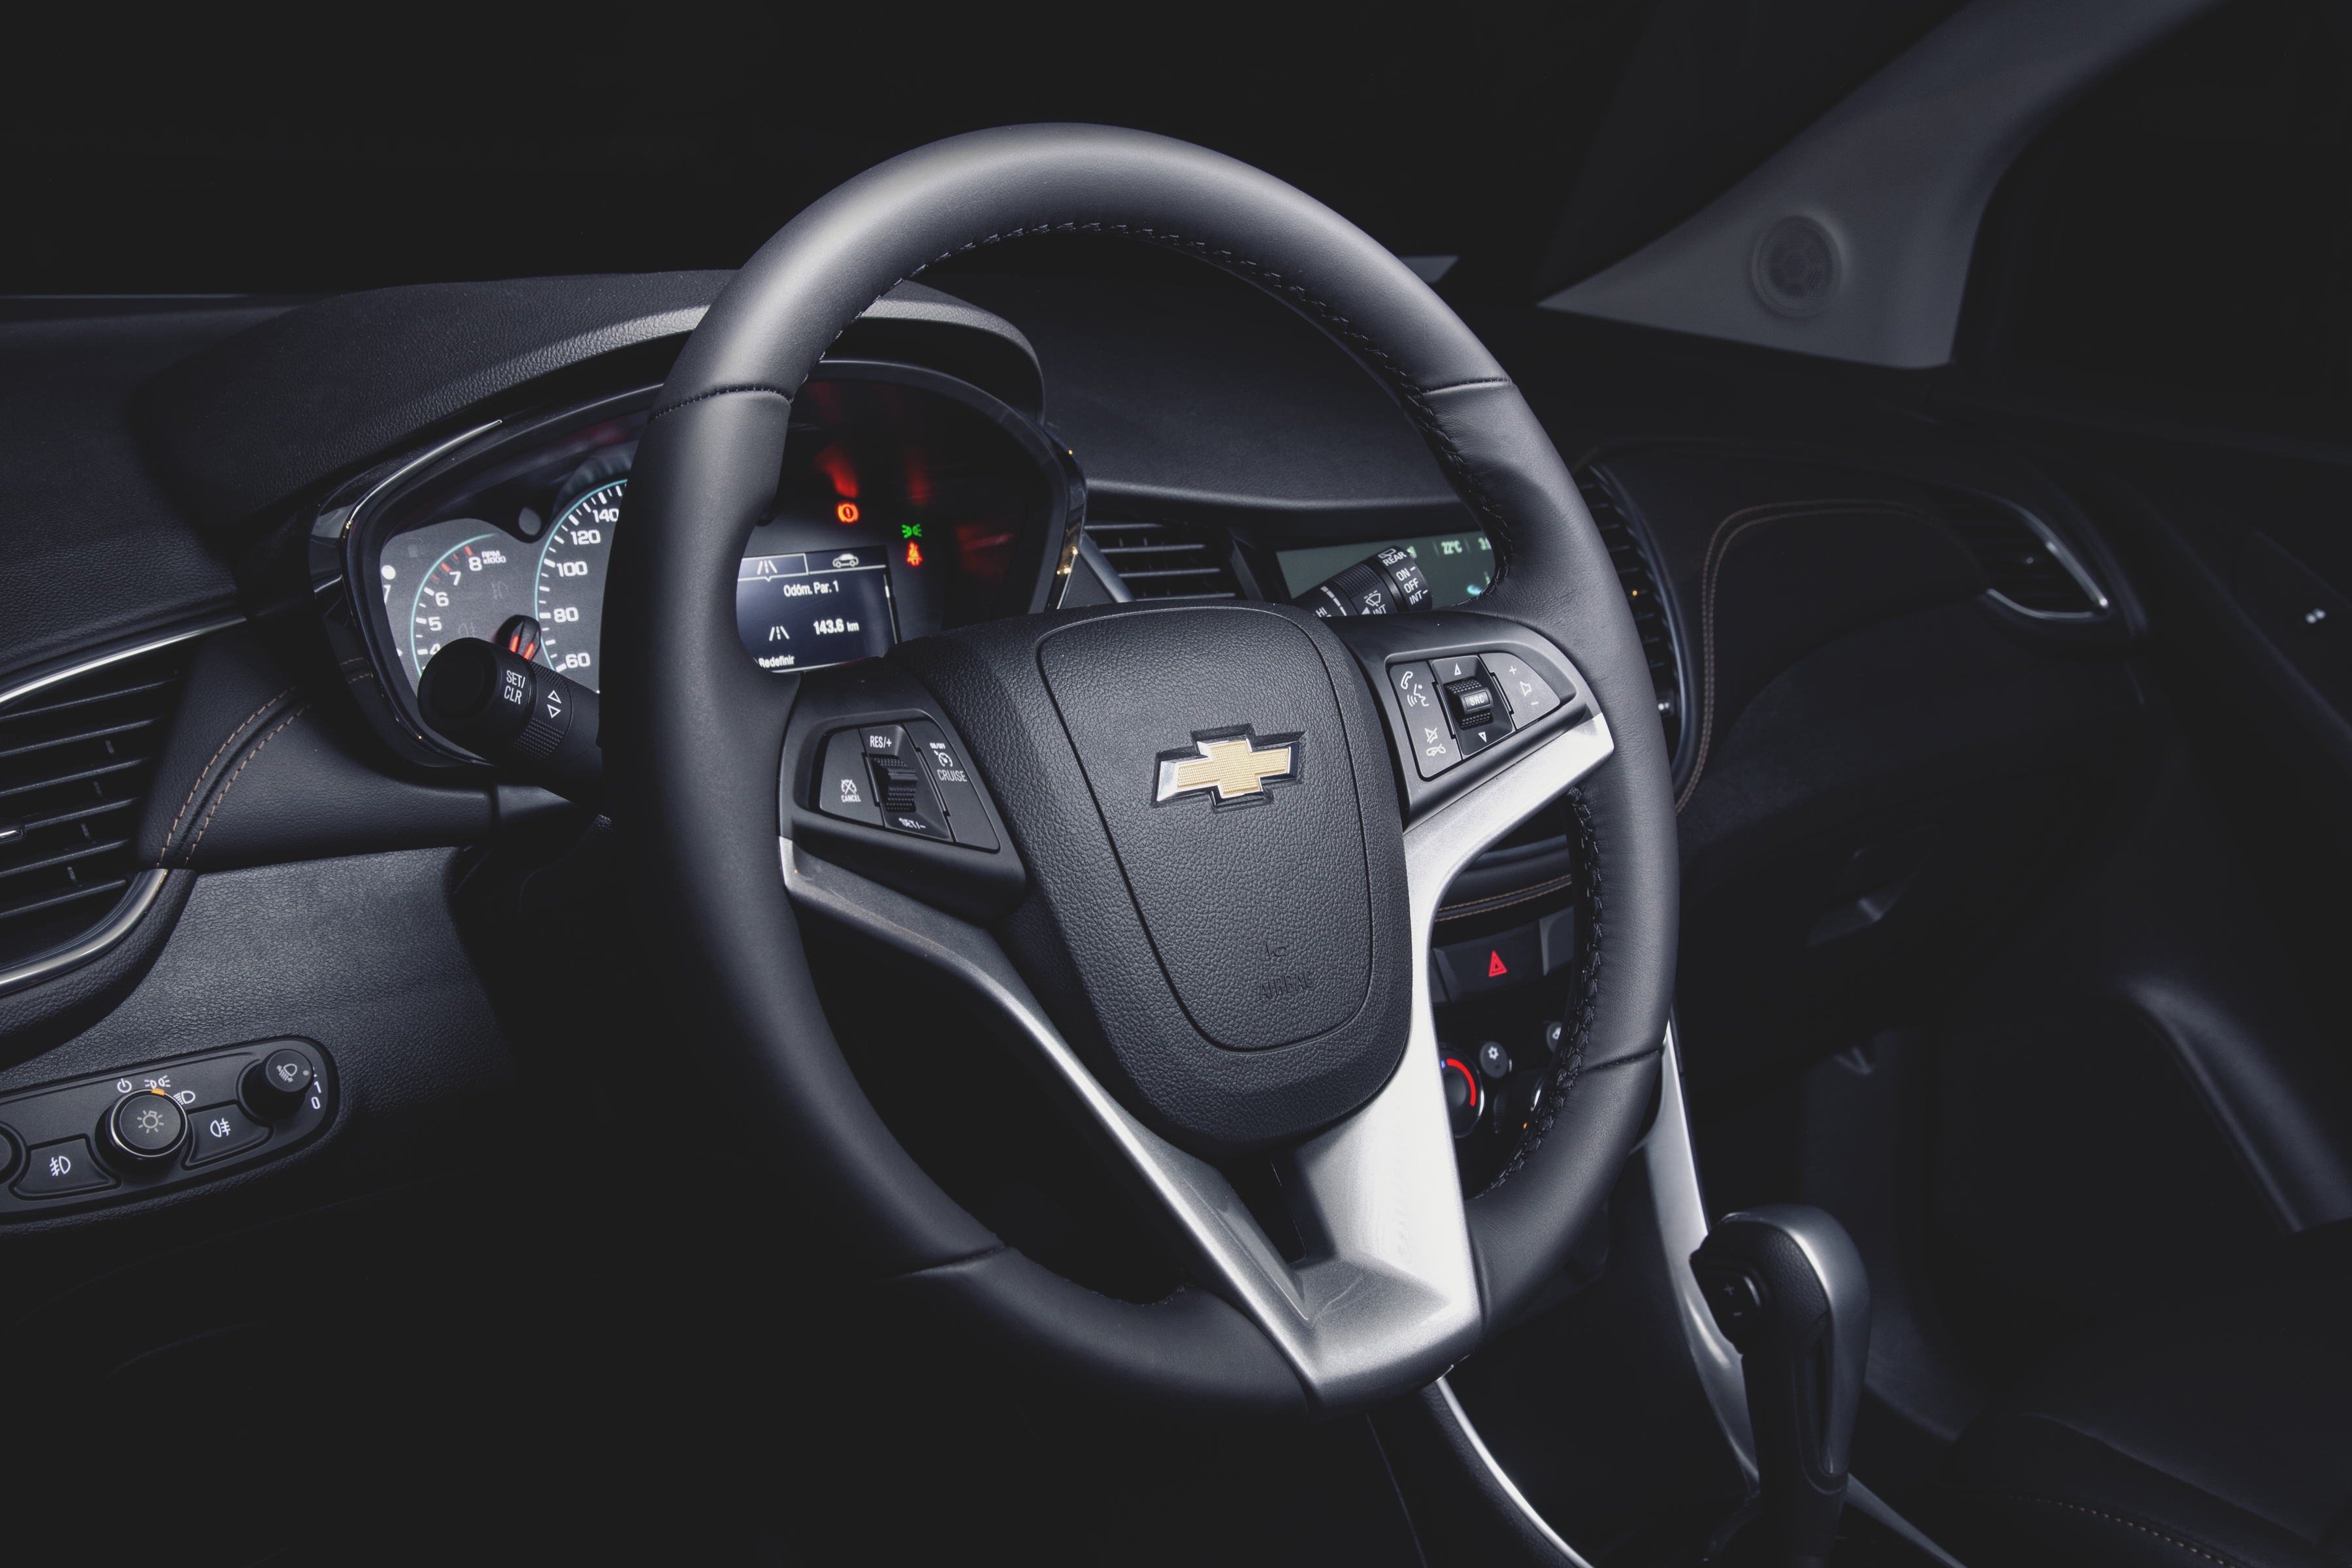  Chevrolet Tracker Midnight tem interior com detalhes em cromado e cinza